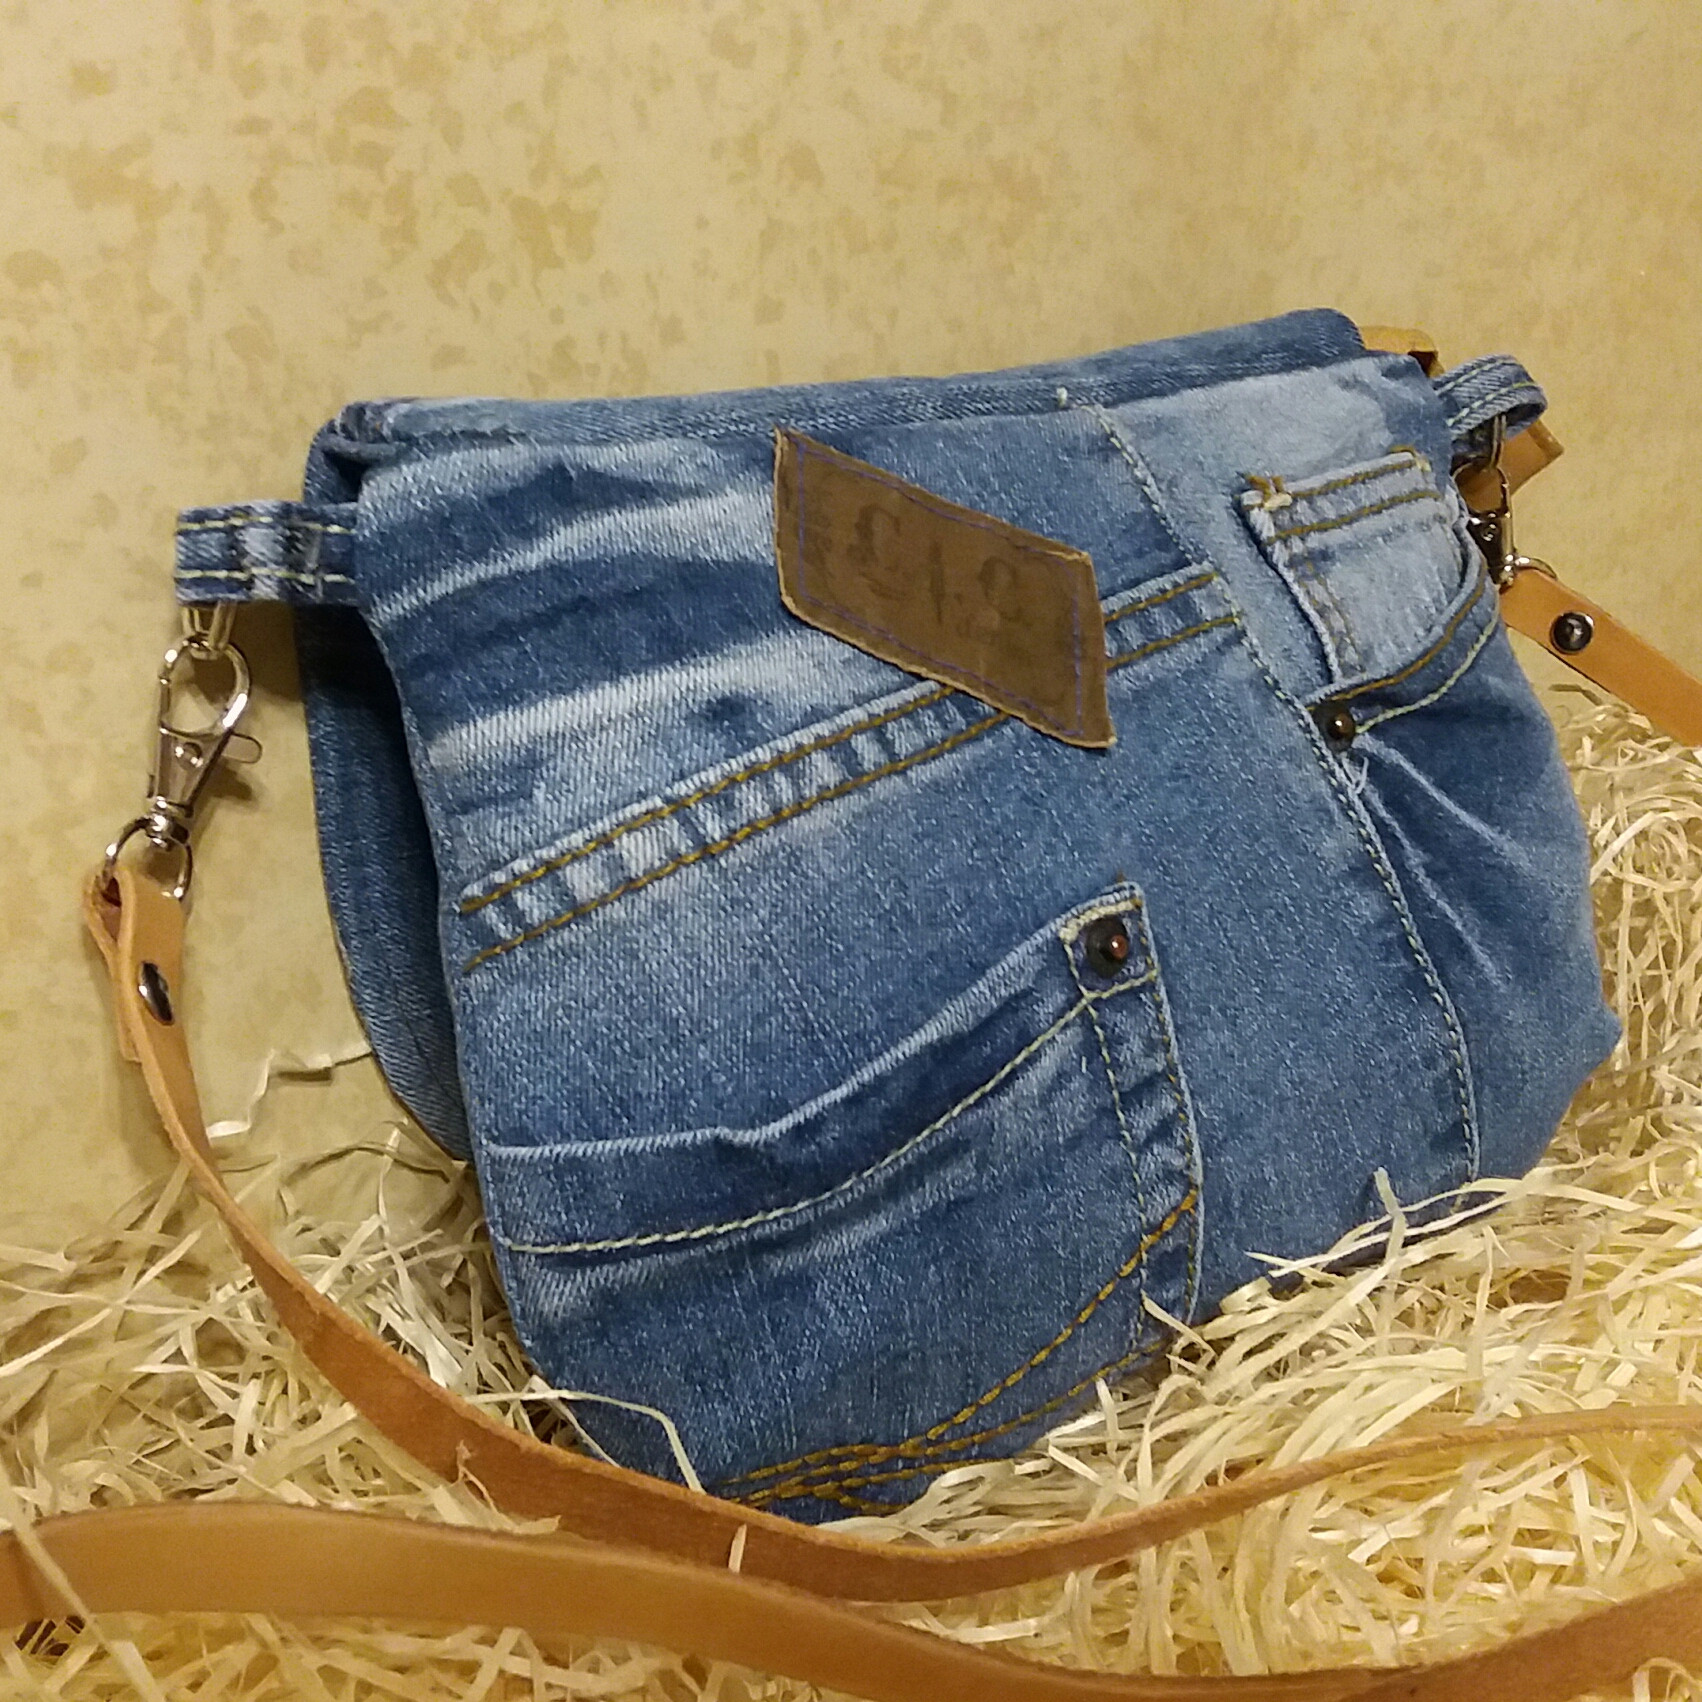 malovaná džínová kabelka